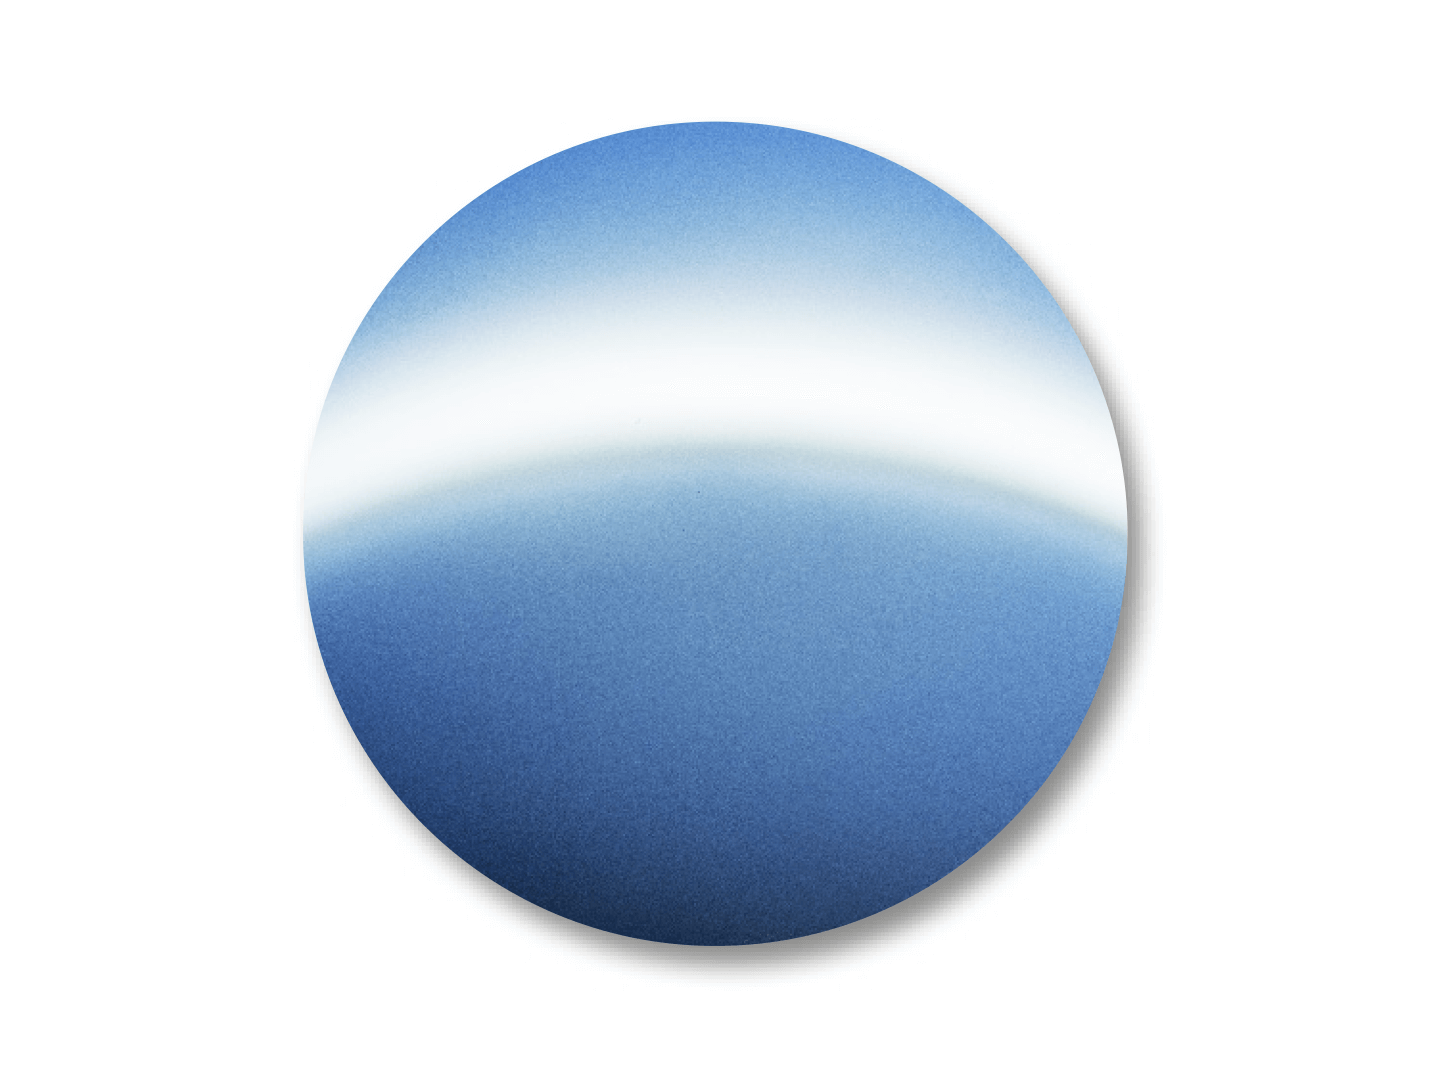 DuraVision Mirror Strong Blue 的顏色示例。 